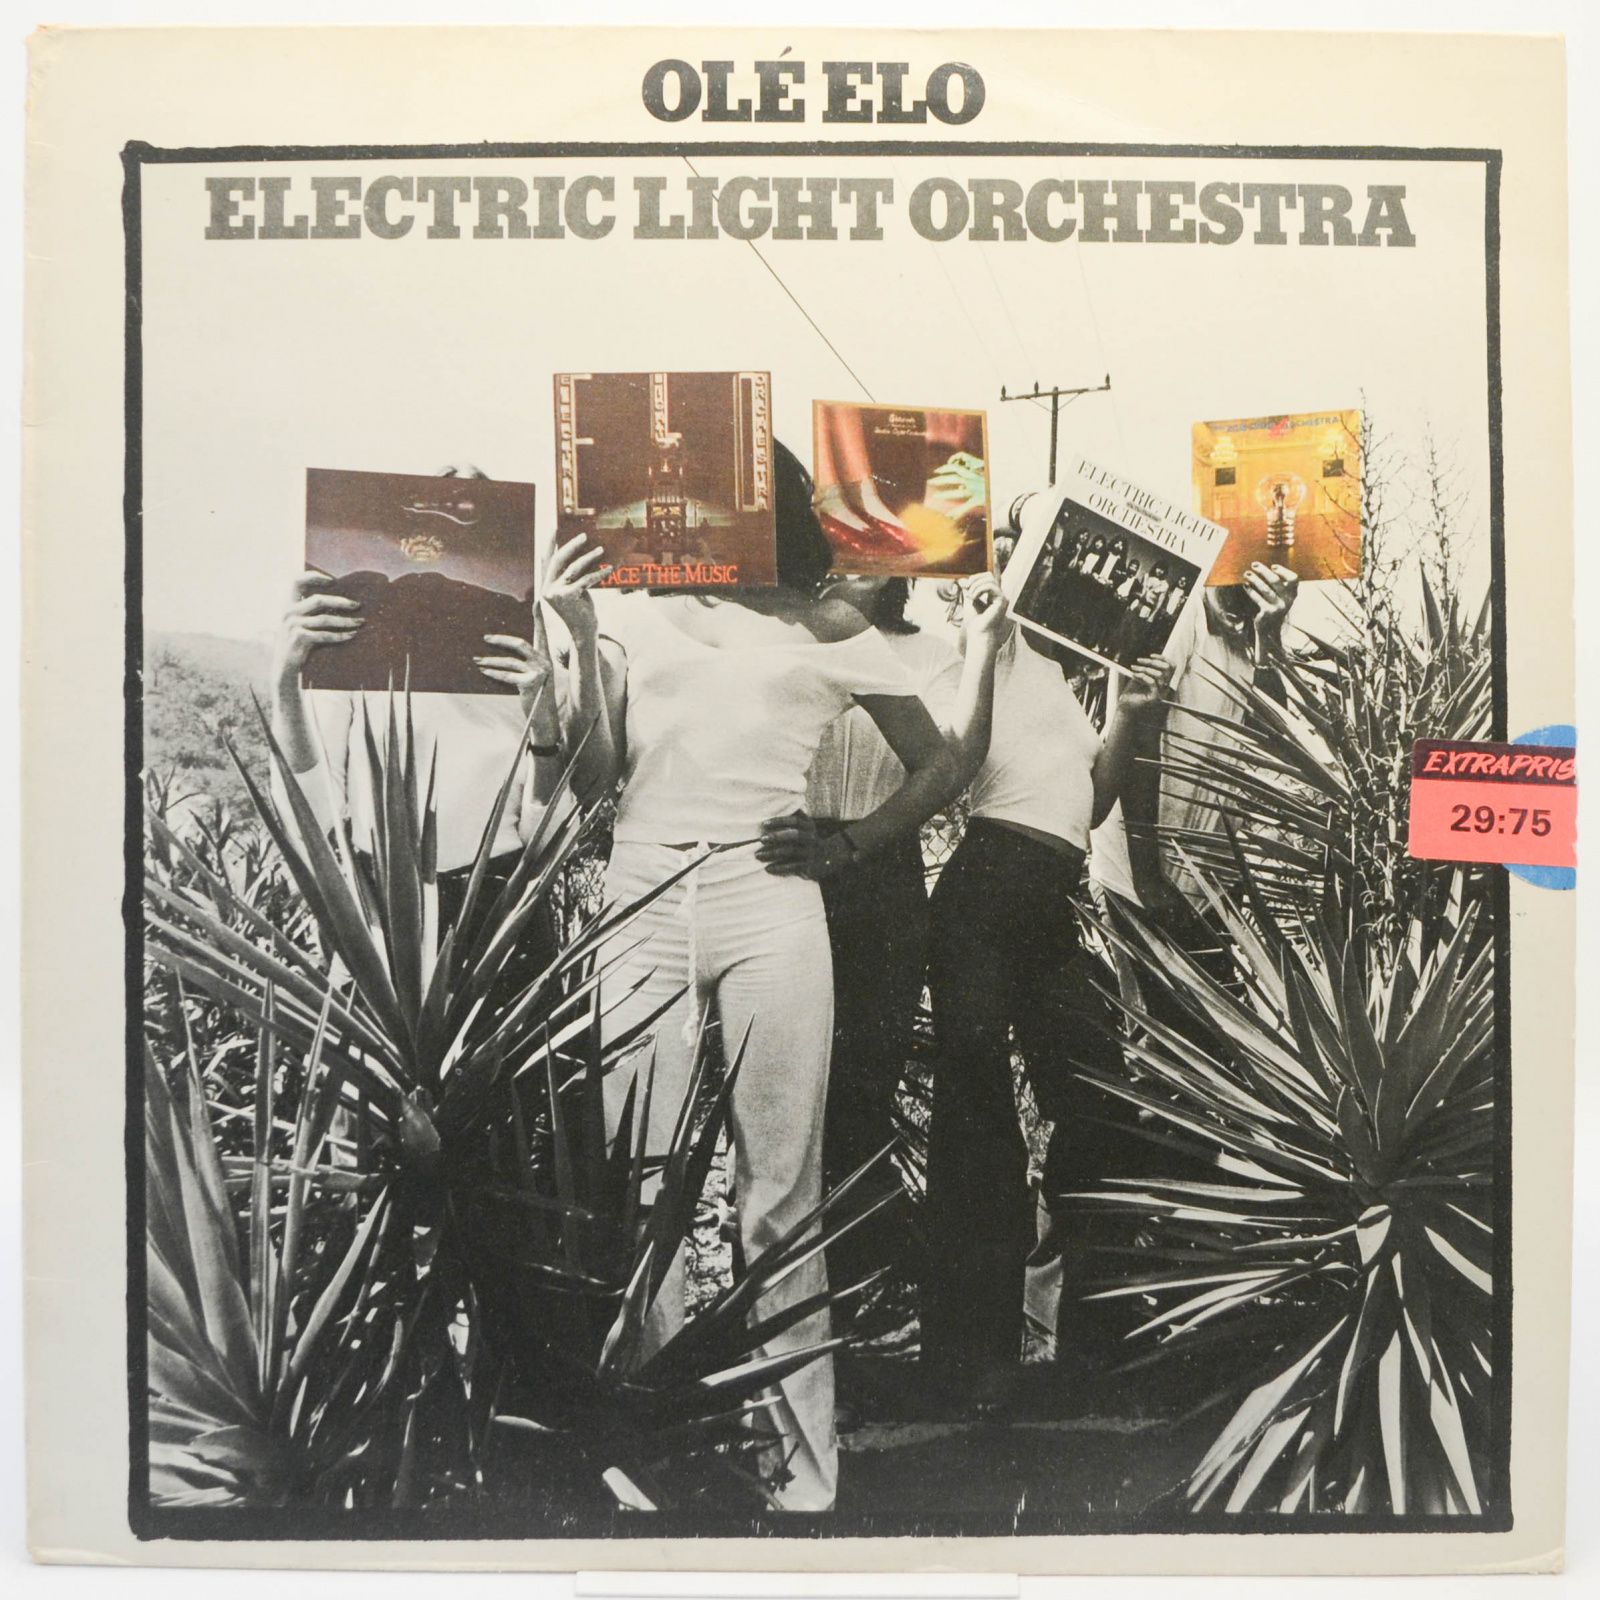 Olé ELO, 1976